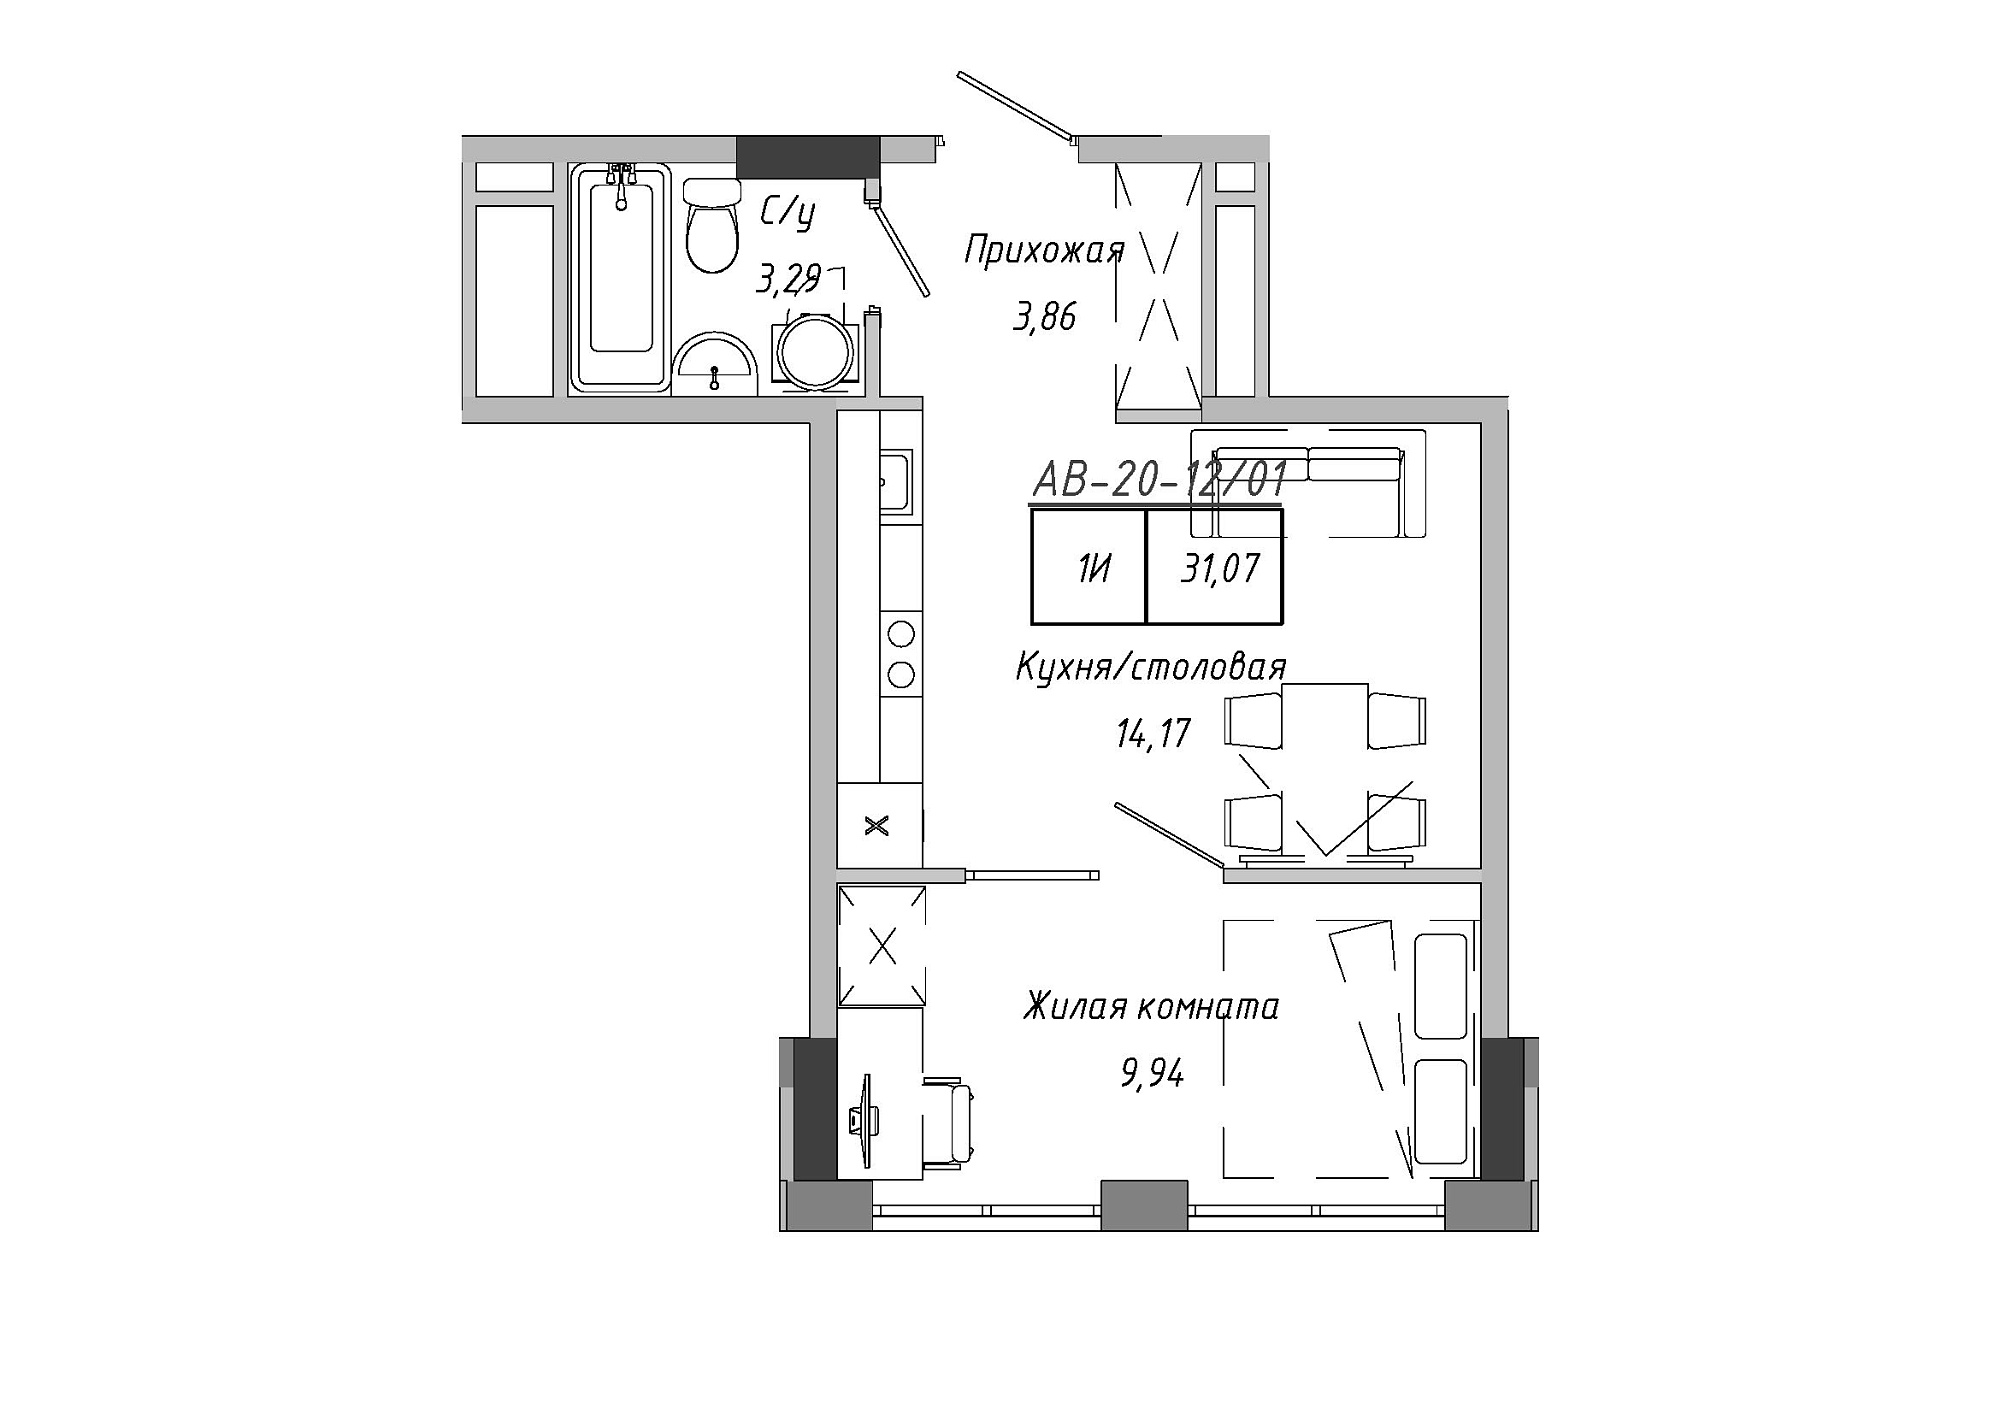 Планировка 1-к квартира площей 30.28м2, AB-20-12/00001.